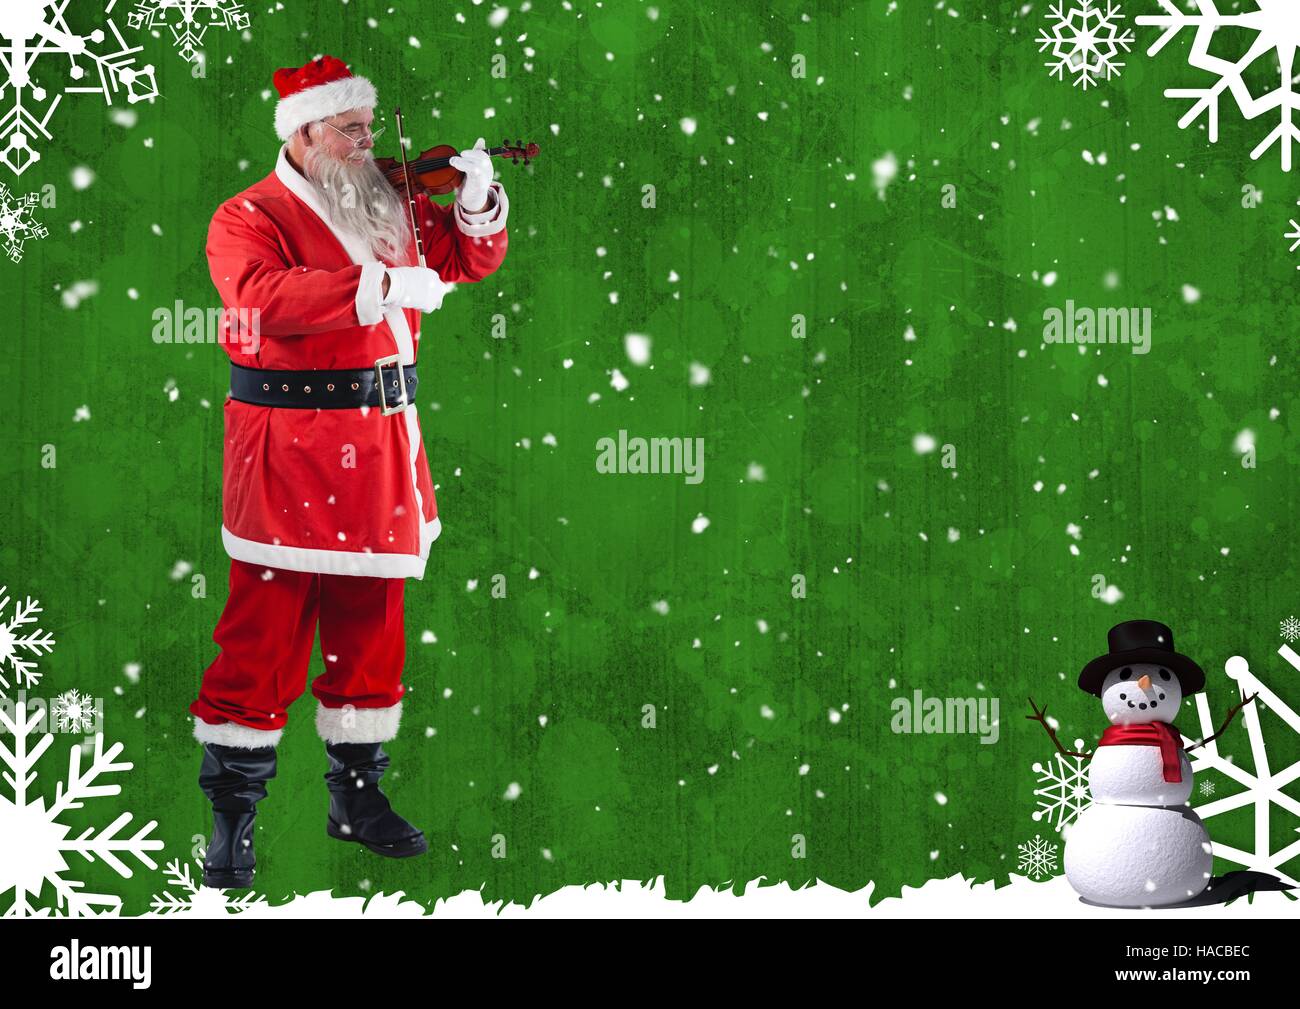 Santa playing violin Stock Photo